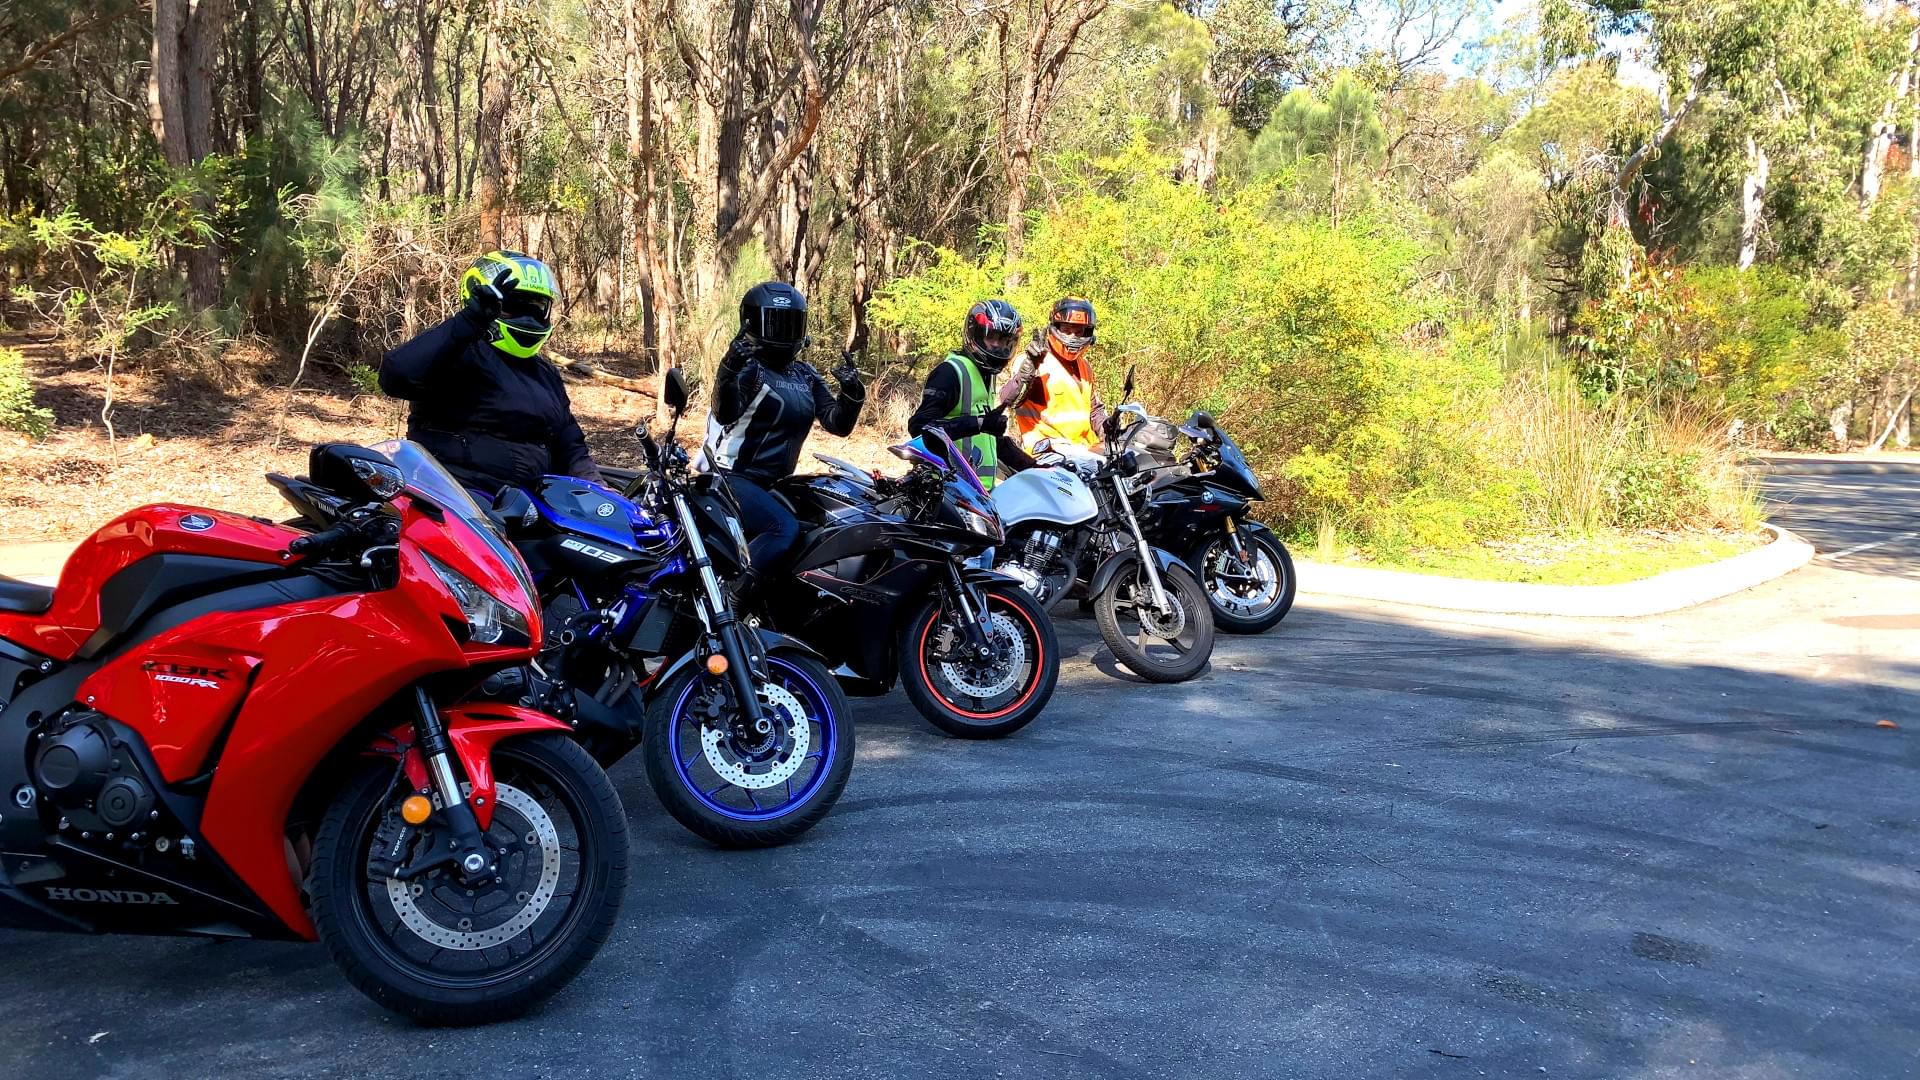 Previous group ride